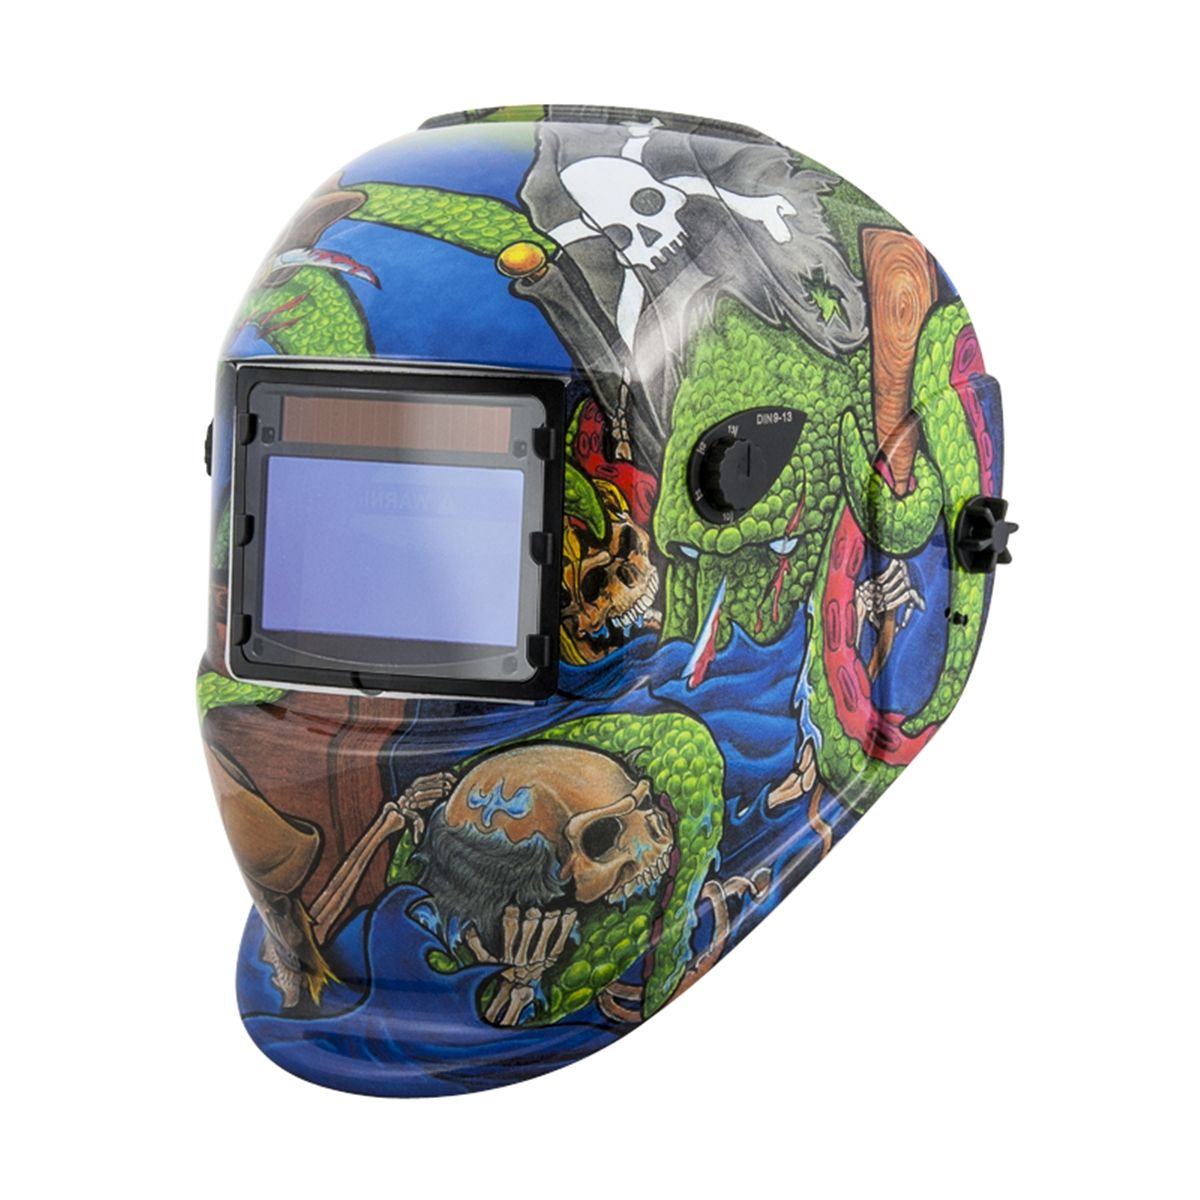 Titan Solar Auto Dark Welding Helmet 41283 for sale online 